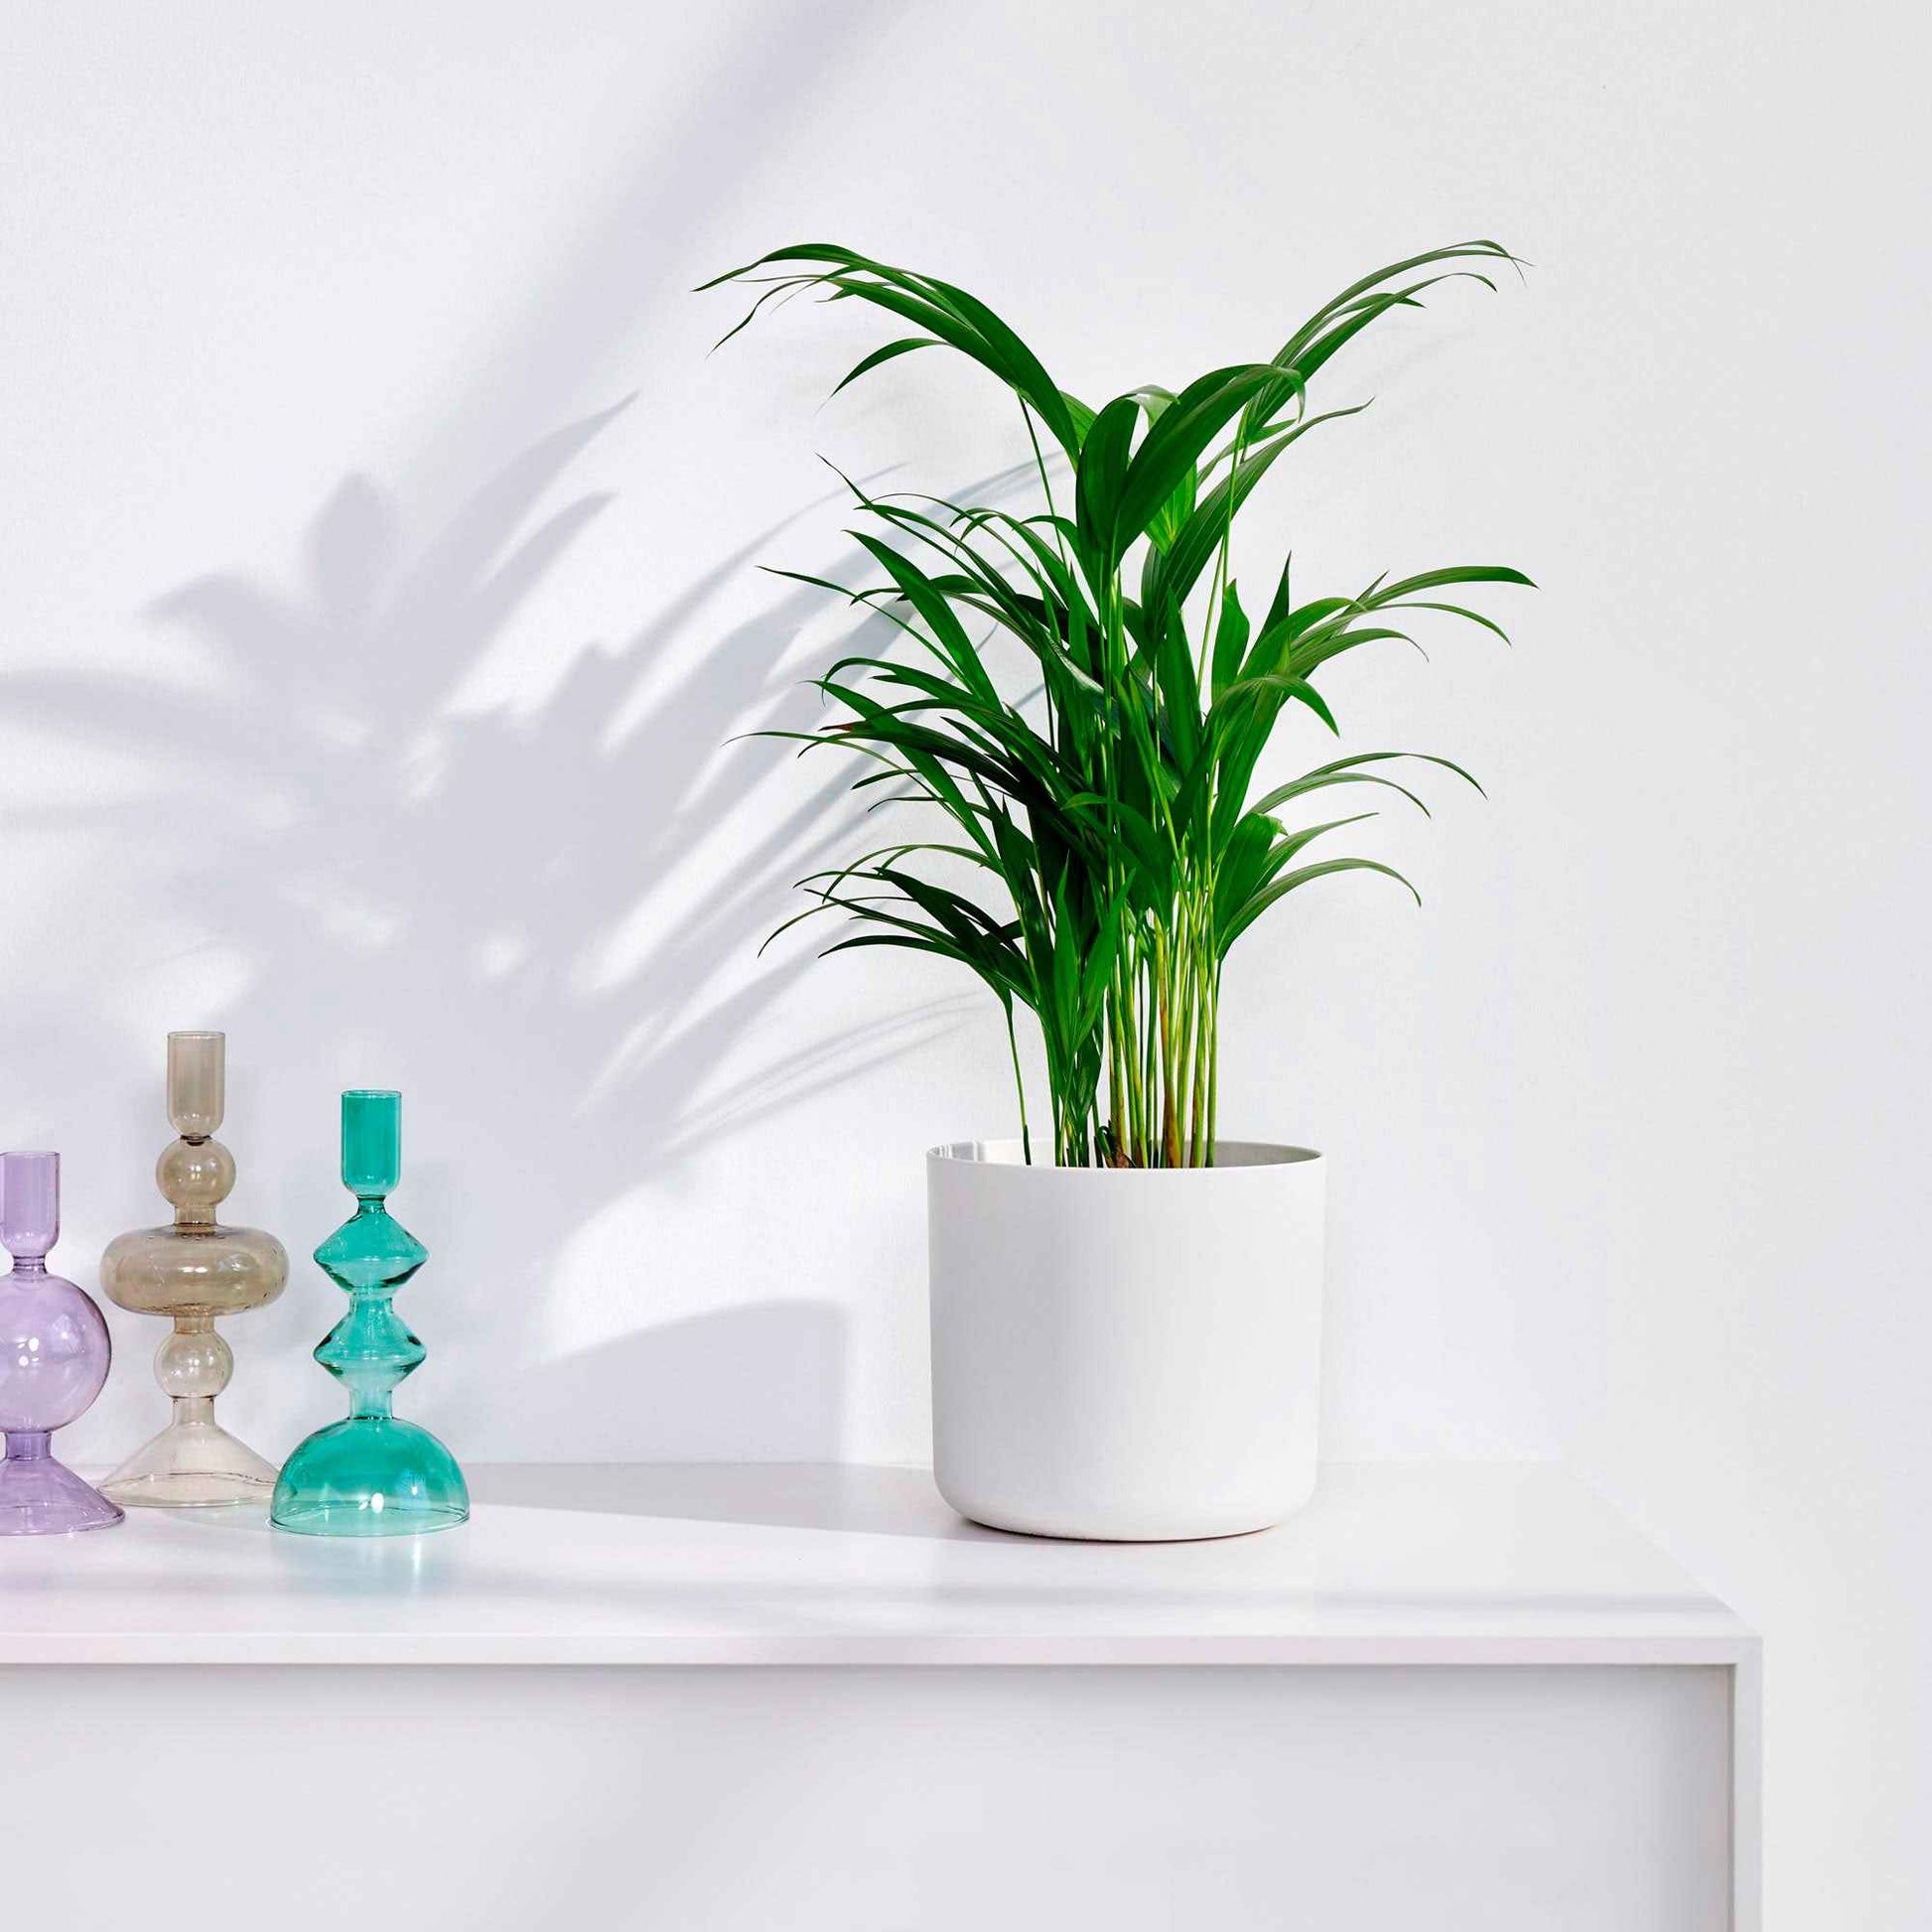 Palmier Aréca Dypsis lutescens avec pot décoratif - Ensembles de plantes d'intérieur